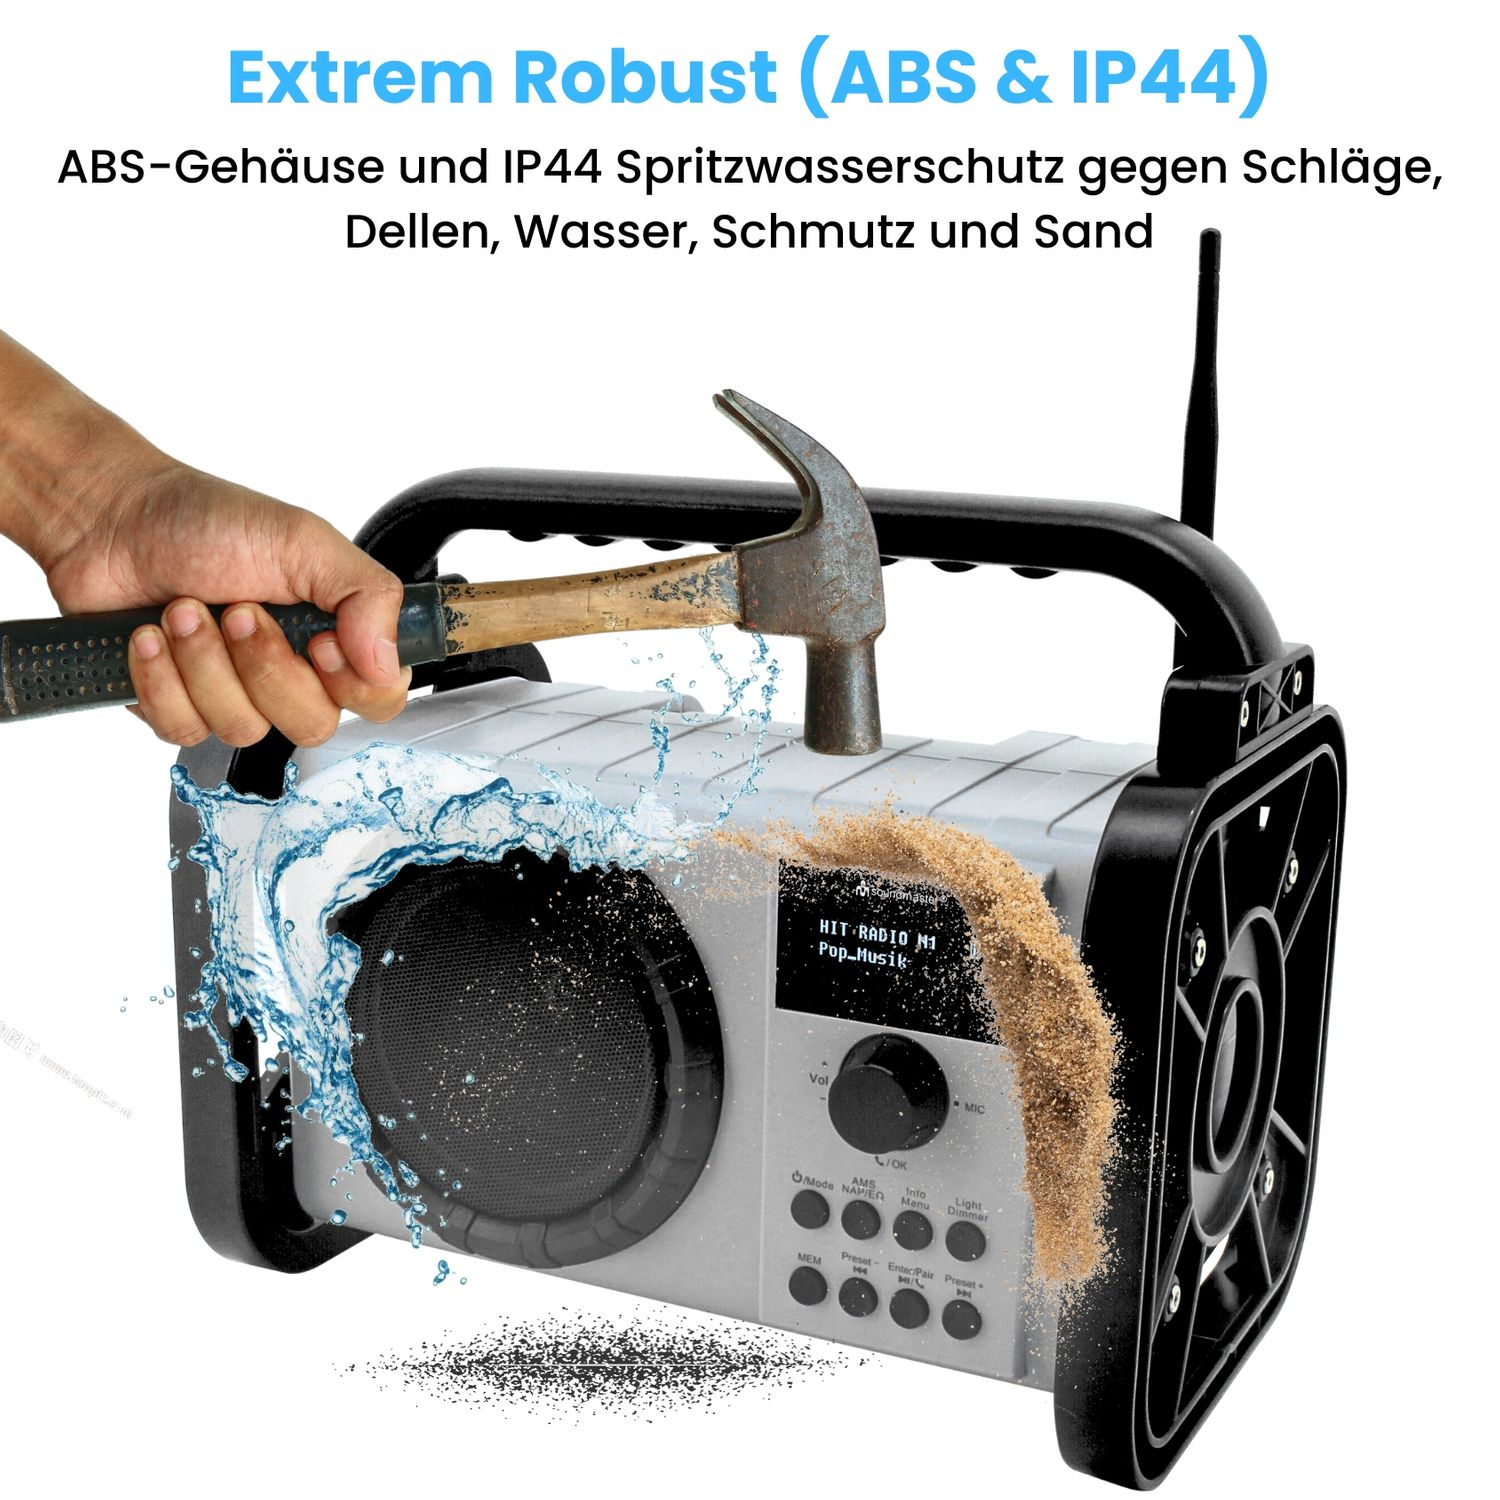 SOUNDMASTER DAB80SW Baustellenradio, DAB+, FM, schwarz AM